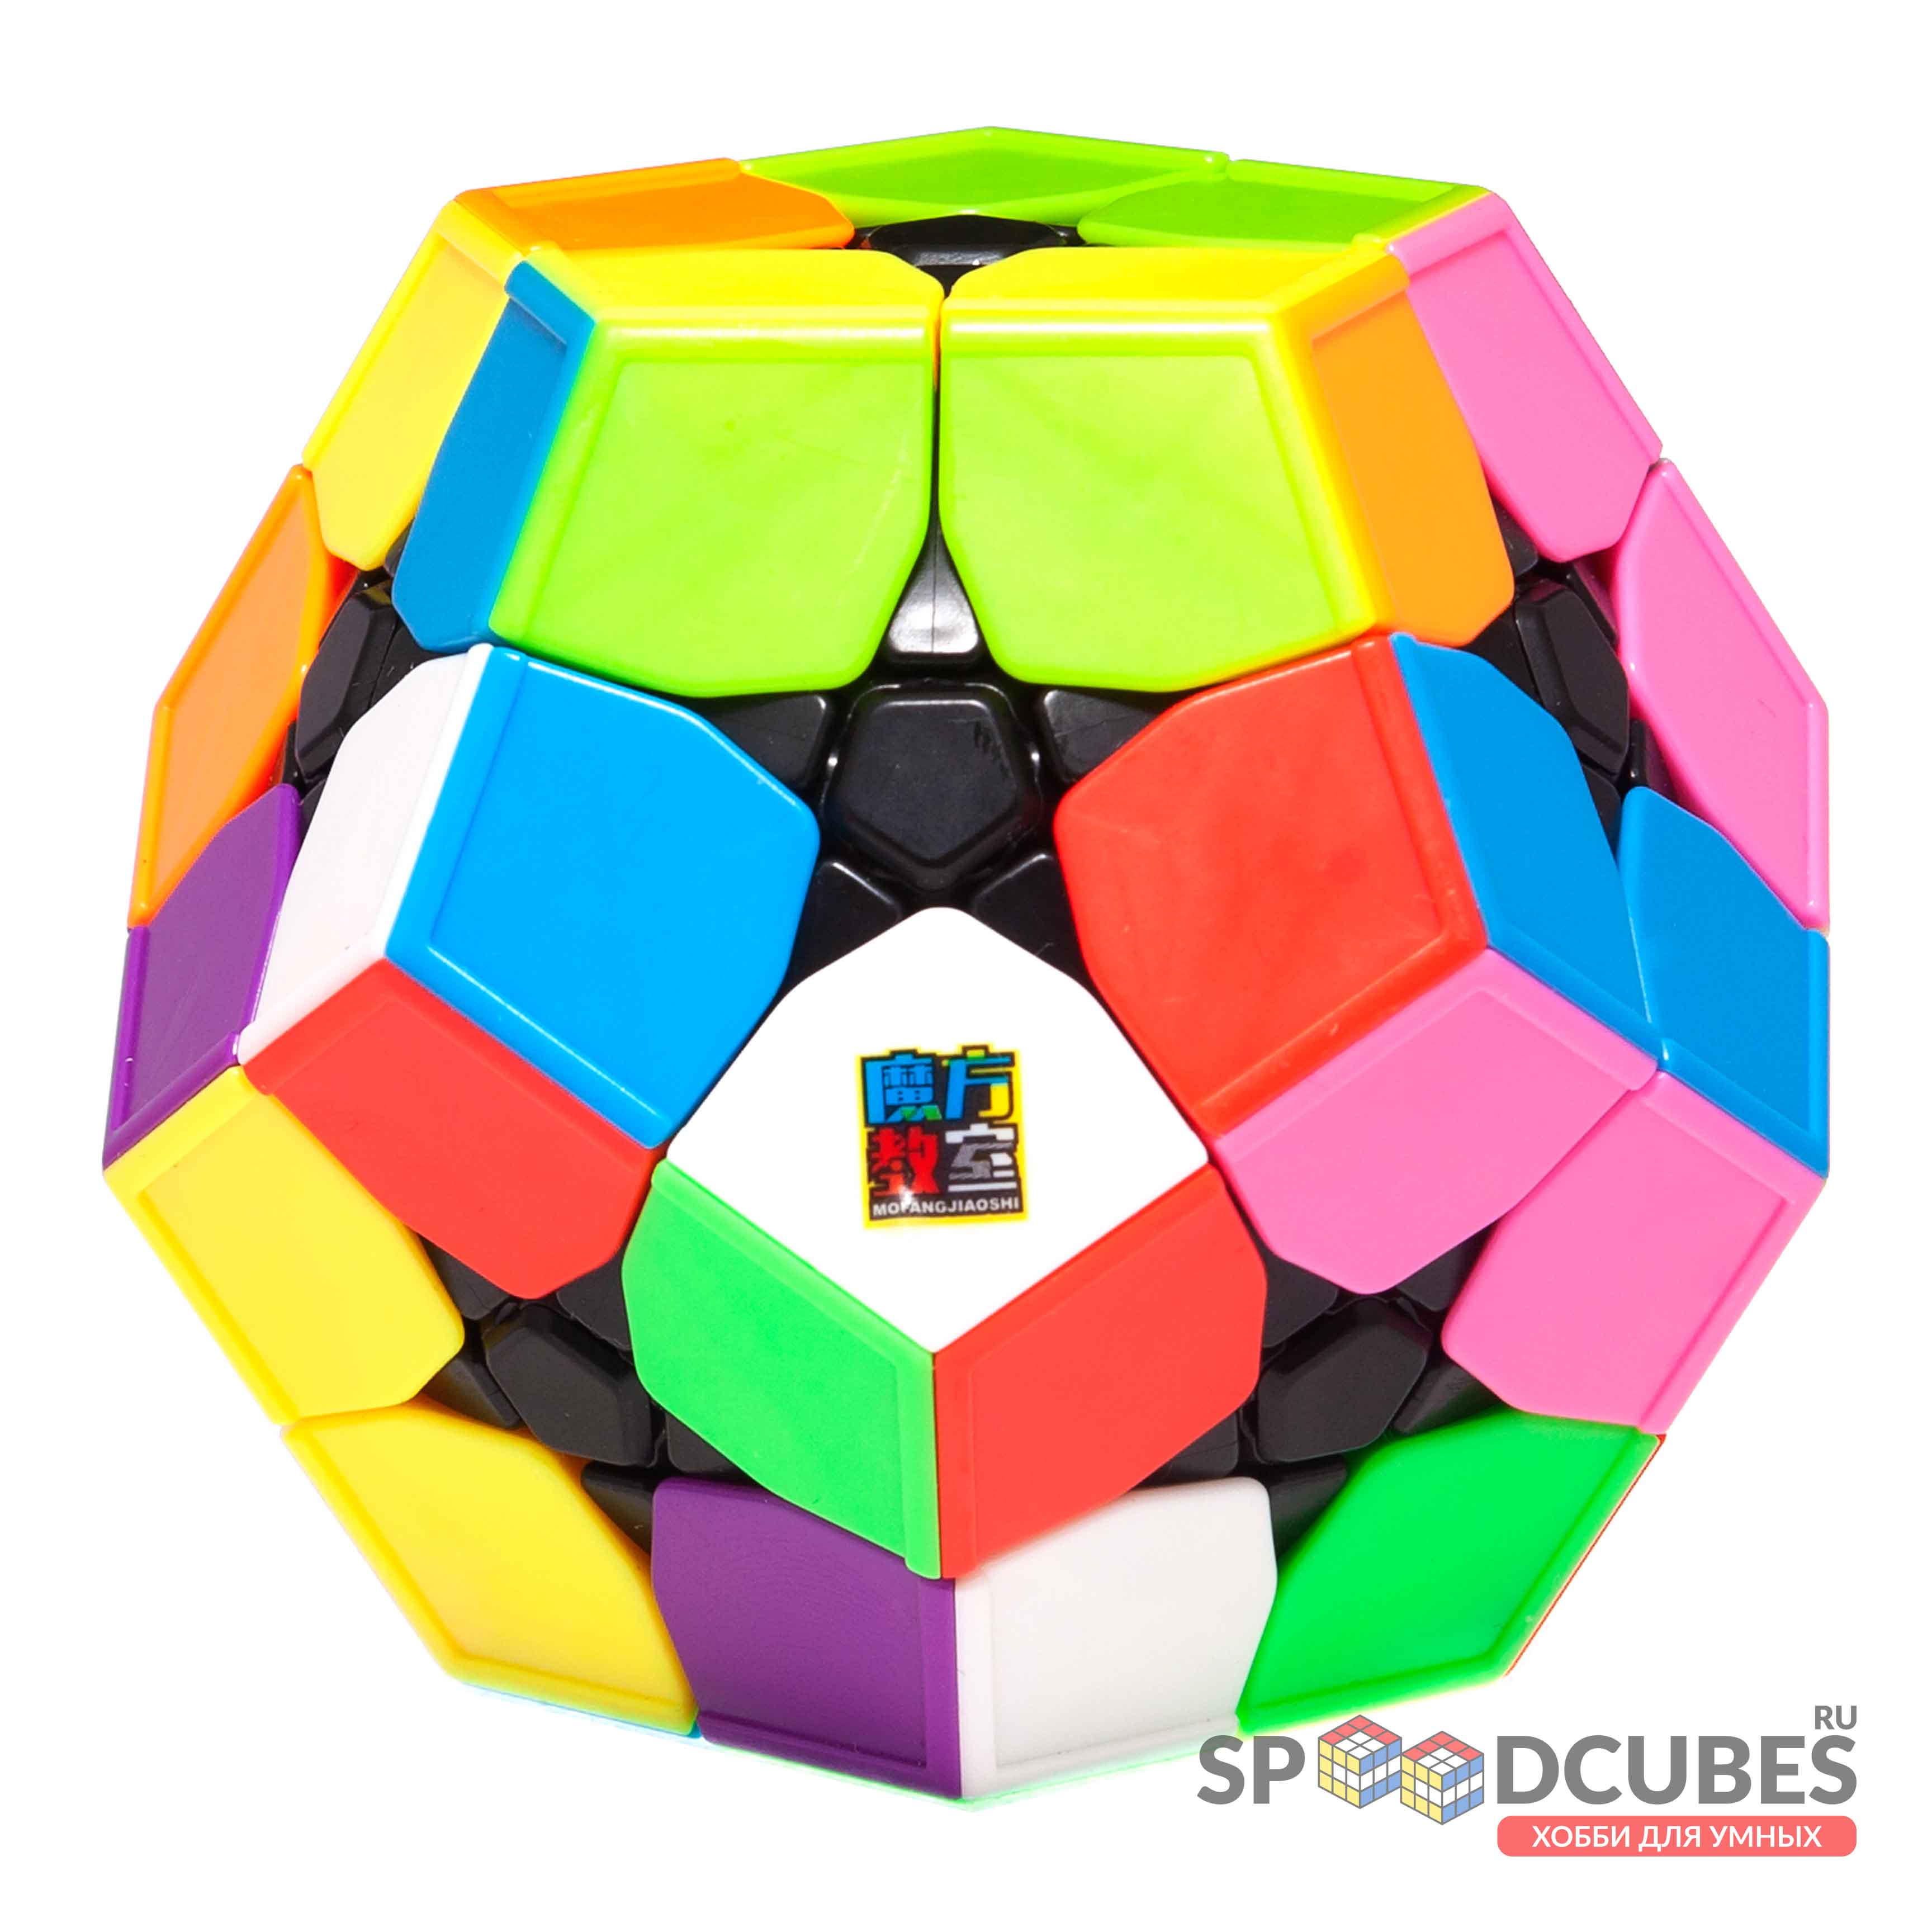 Rubik Kibiminx MoYu MeiLong MFJS Rubic Biến Thể 12 Mặt Đồ Chơi Trí Tuệ